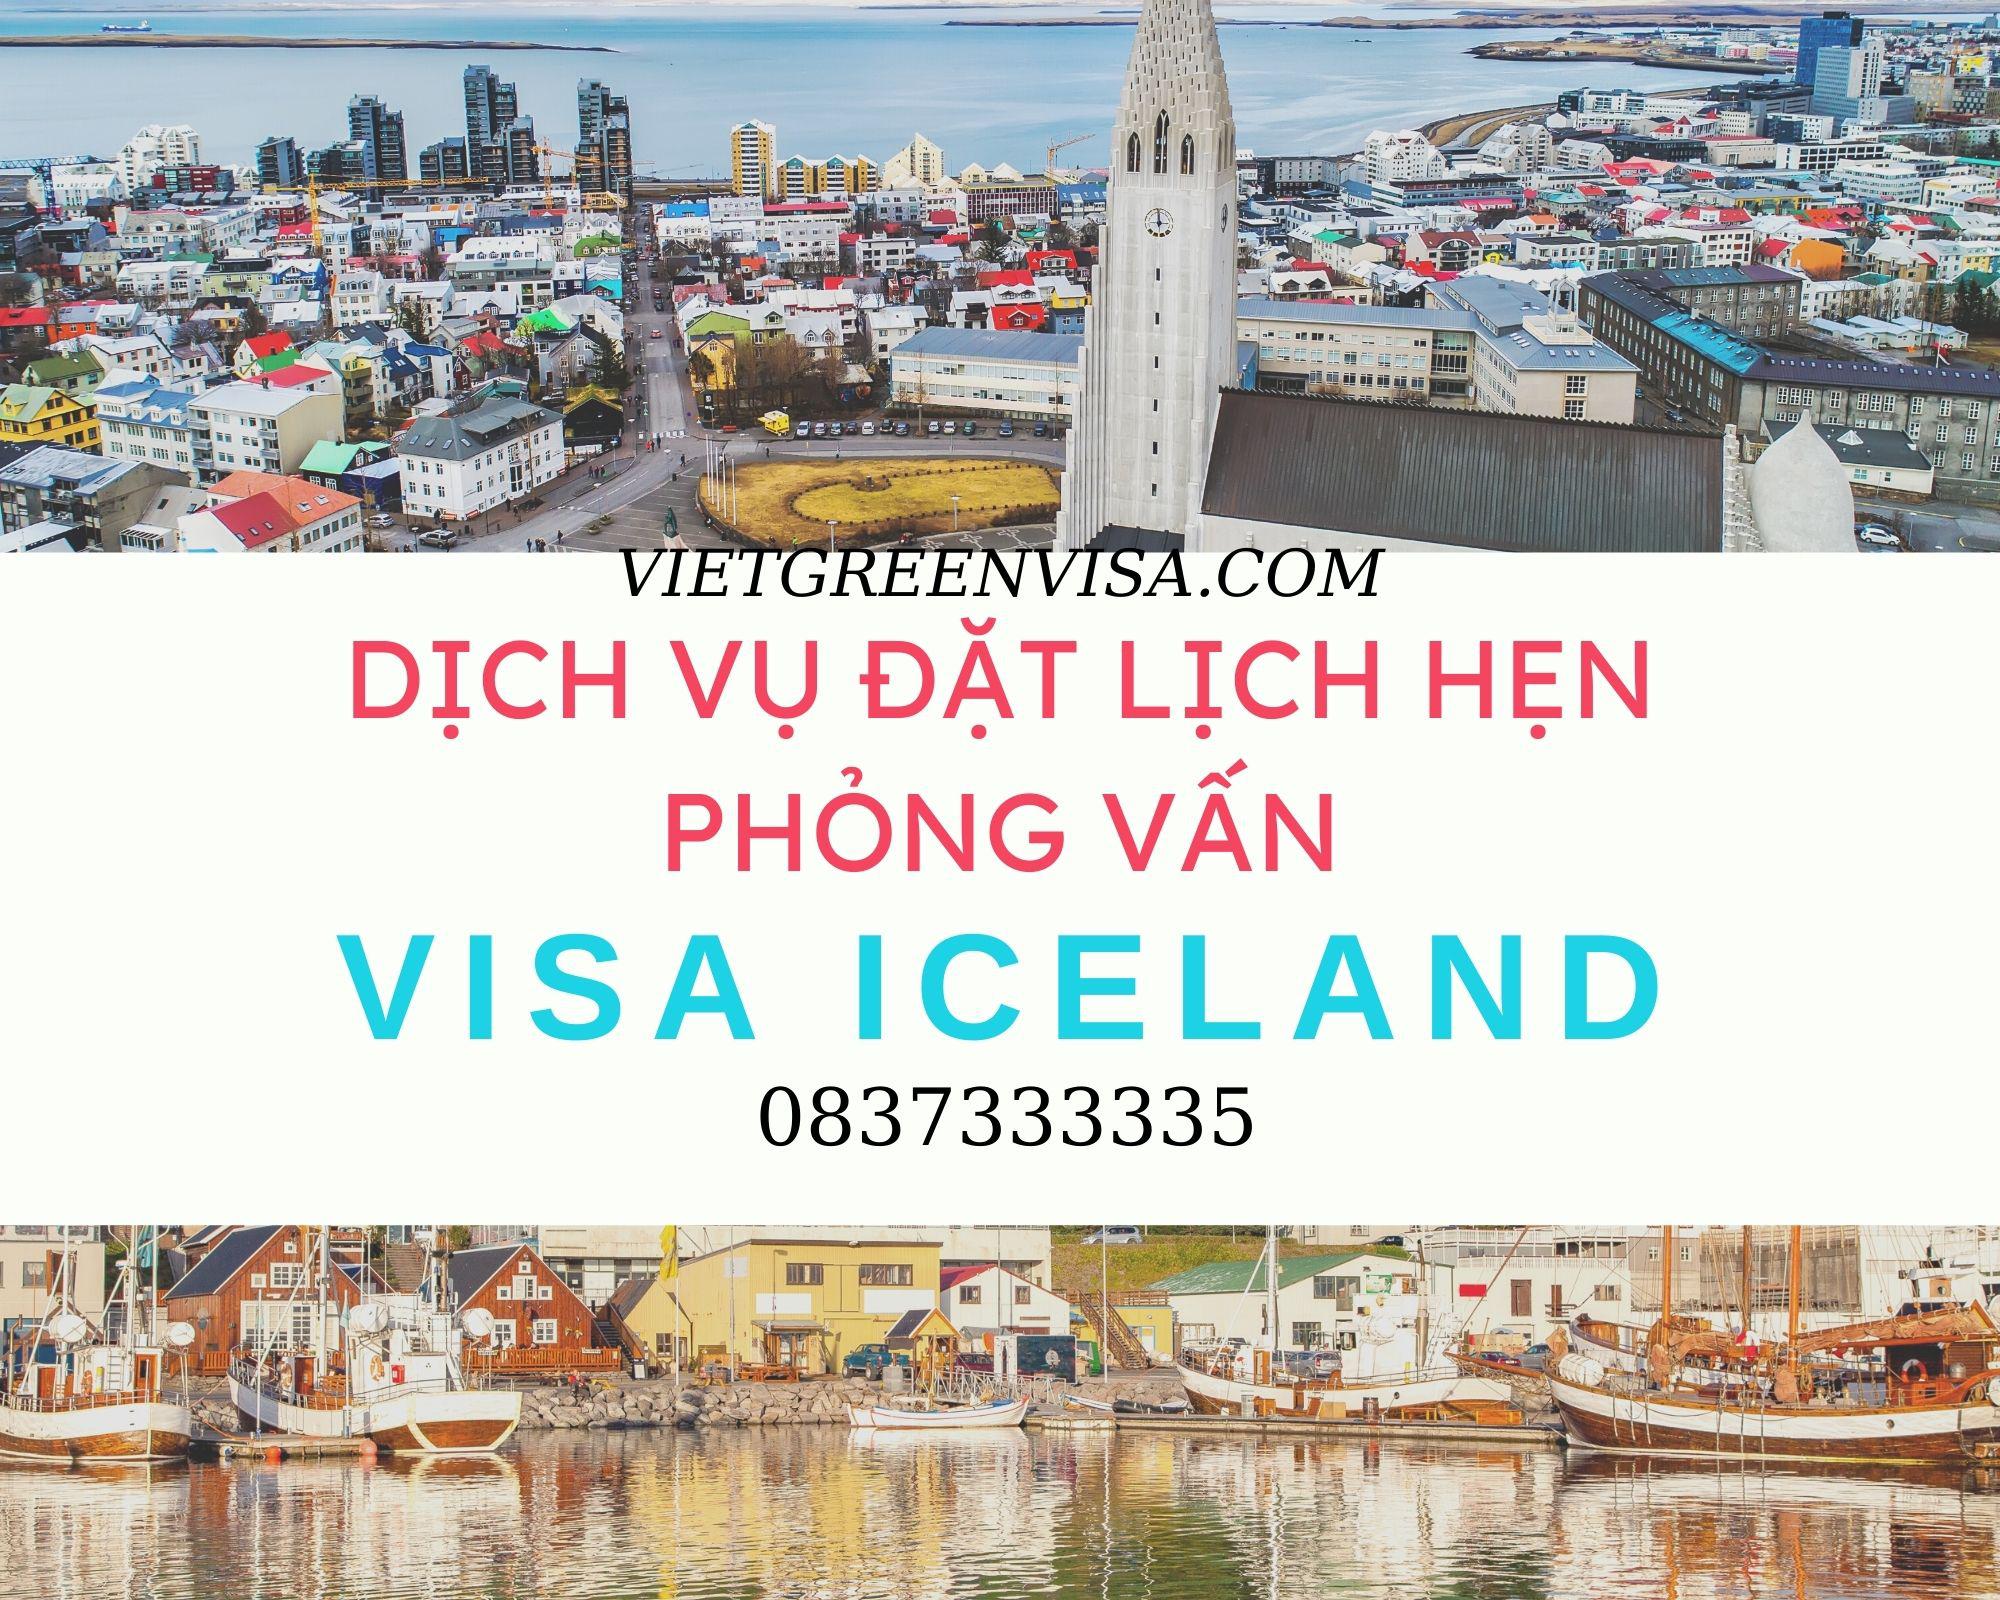 Dịch vụ hỗ trợ đặt lịch hẹn phỏng vấn visa Iceland